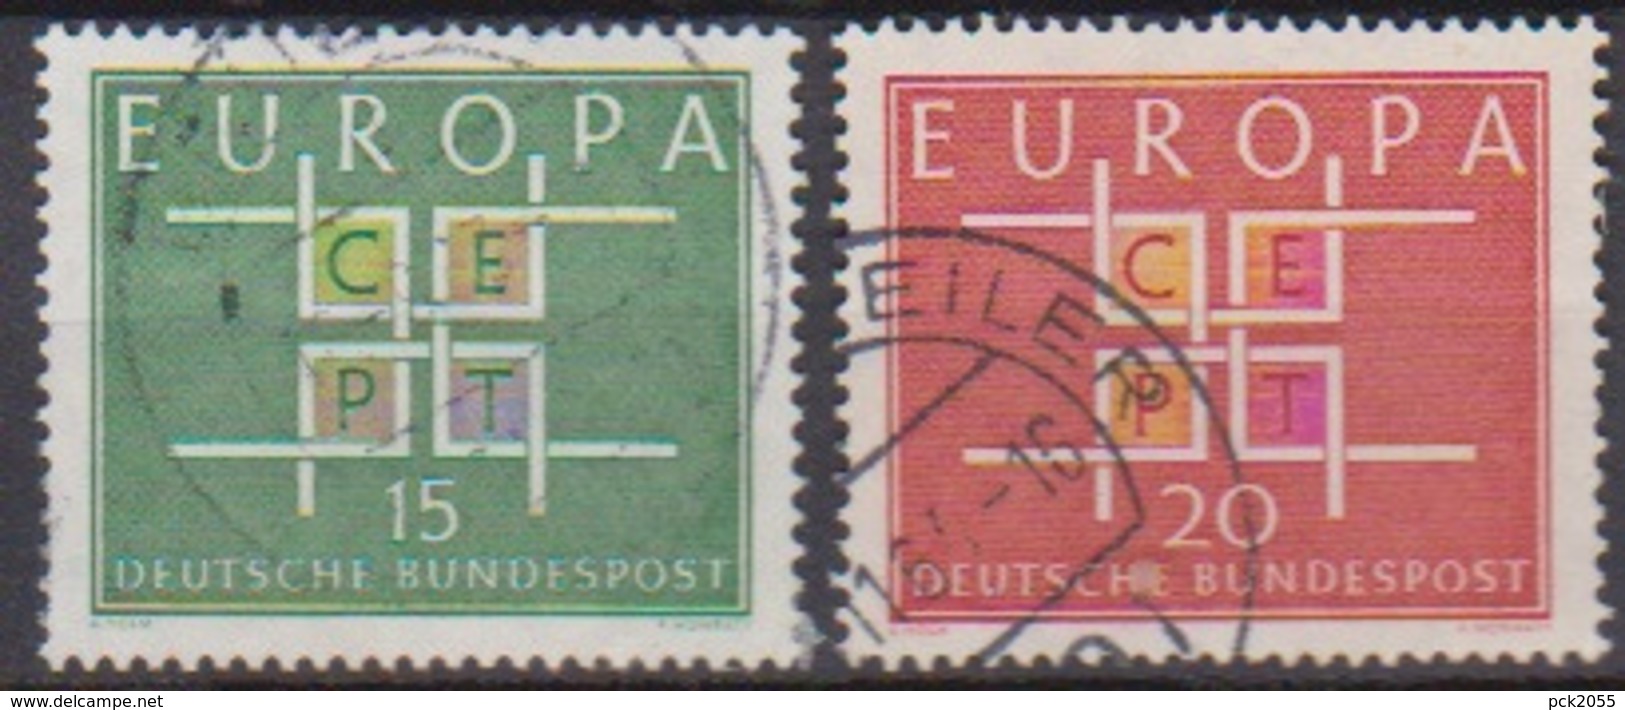 BRD 1963 MiNr.406 - 407 Europa ( A693 ) Günstige Versandkosten - Used Stamps